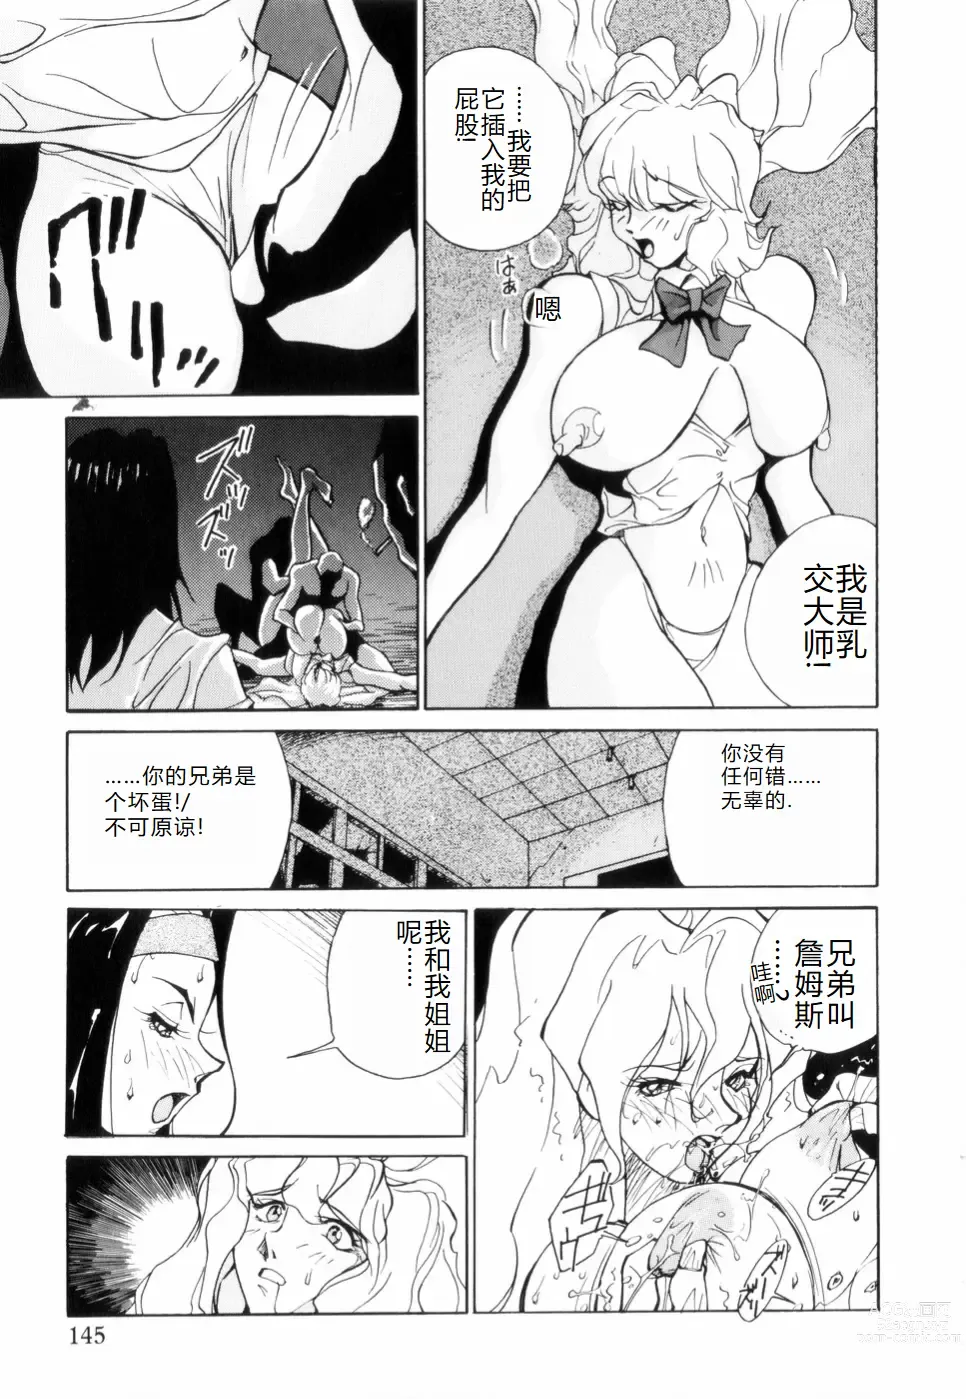 Page 149 of manga Hakujuu no Hasha